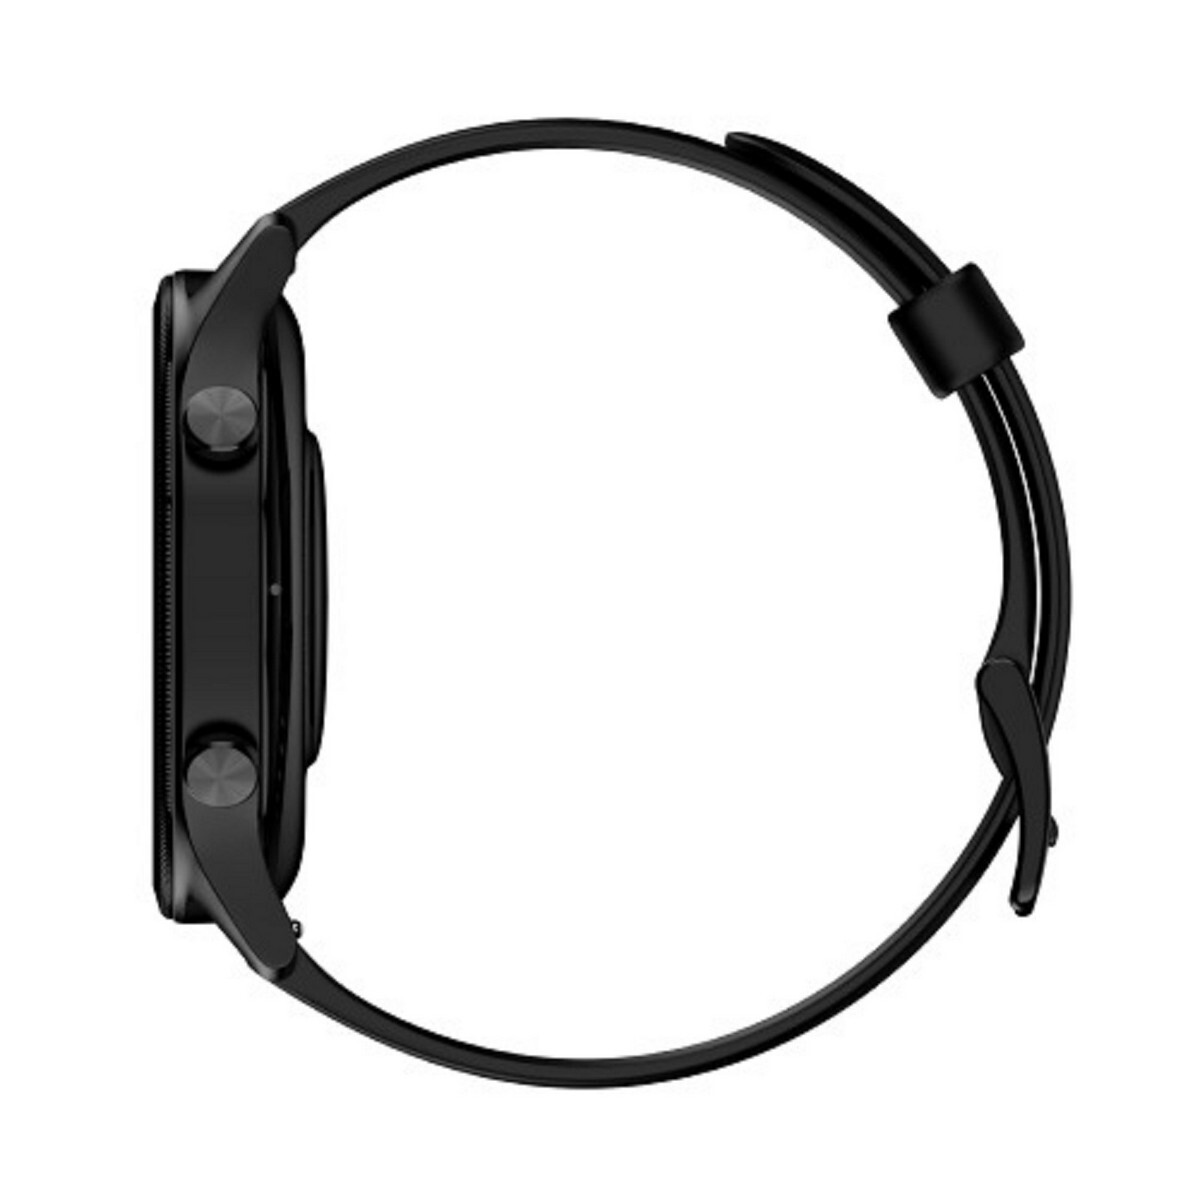 Noise Smart Watch Fit Evolve 3 Carbon Black